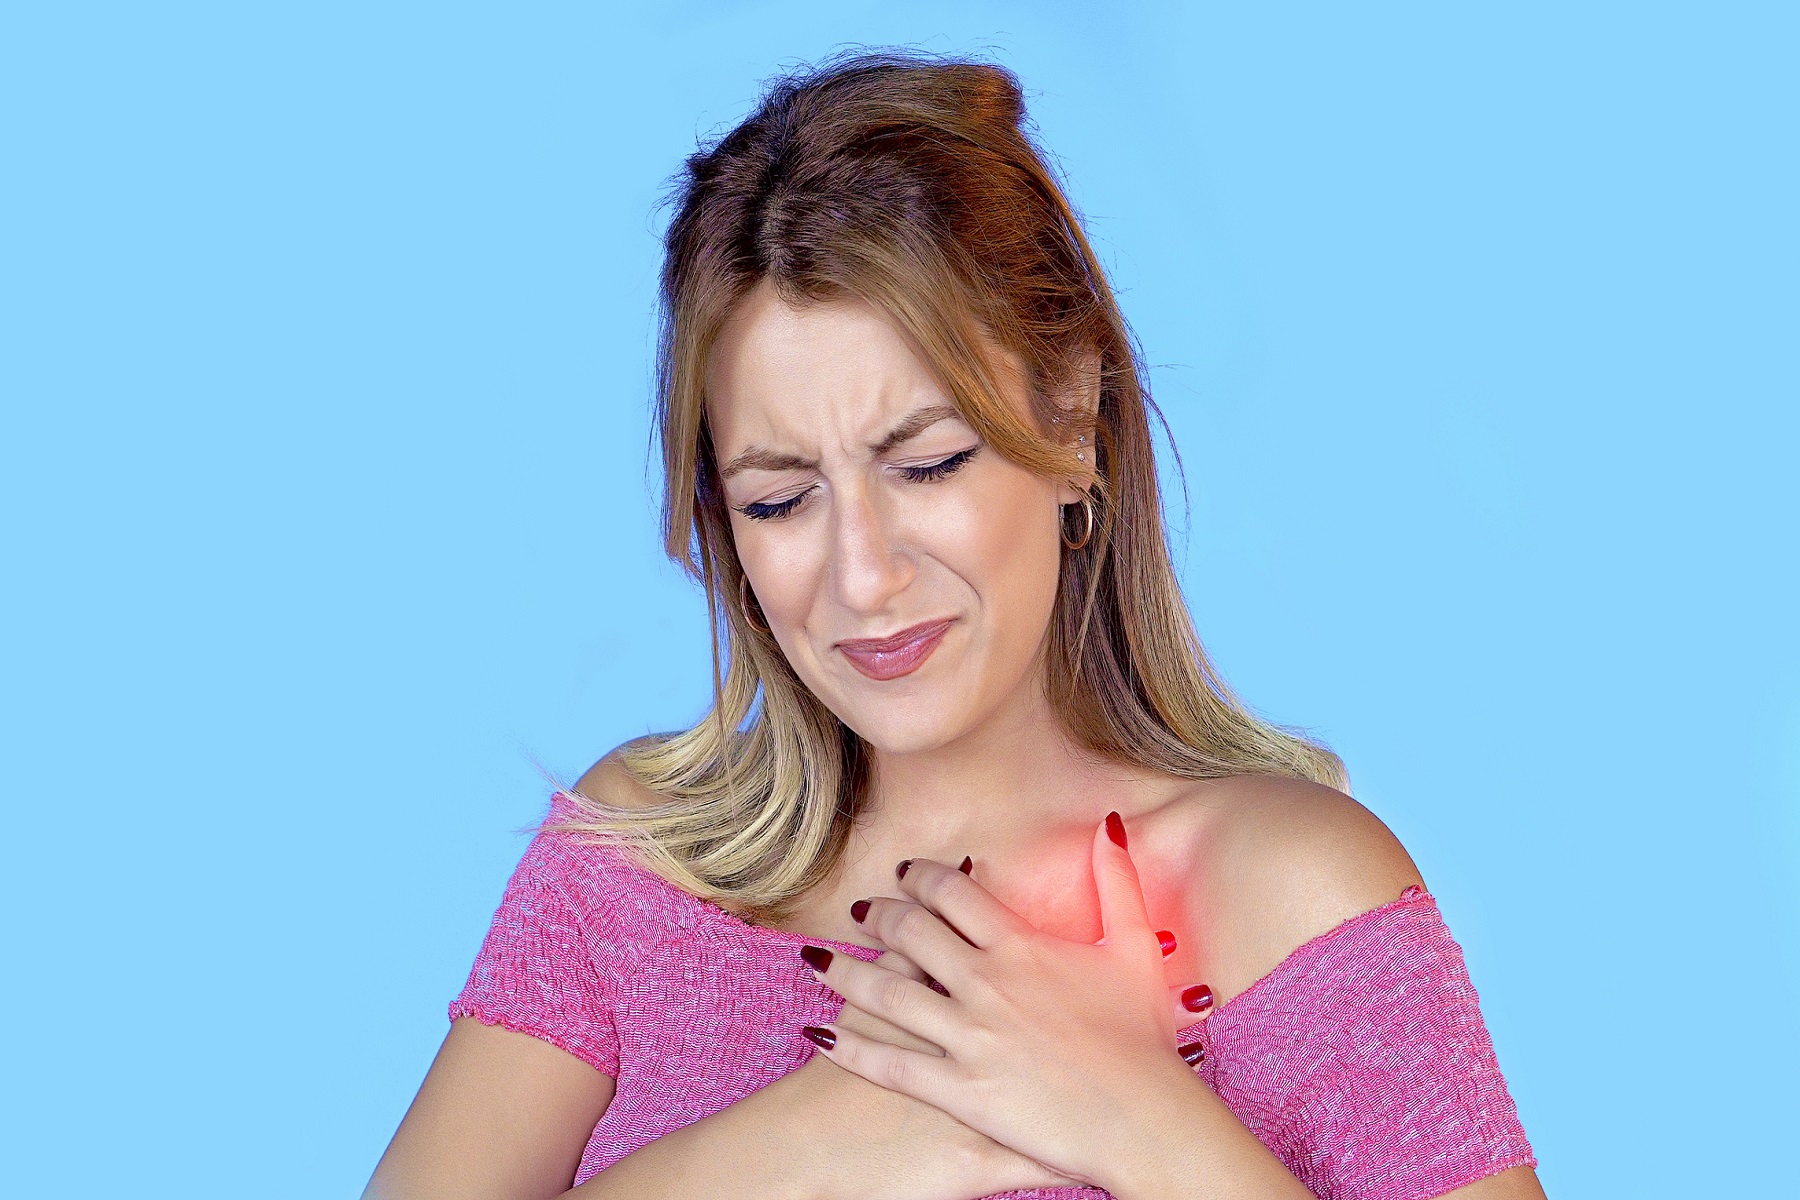 Στήθος Πόνος: Όταν οφείλεται σε covid-19, άγχος, καρδιακή προσβολή ή άλλη αιτία